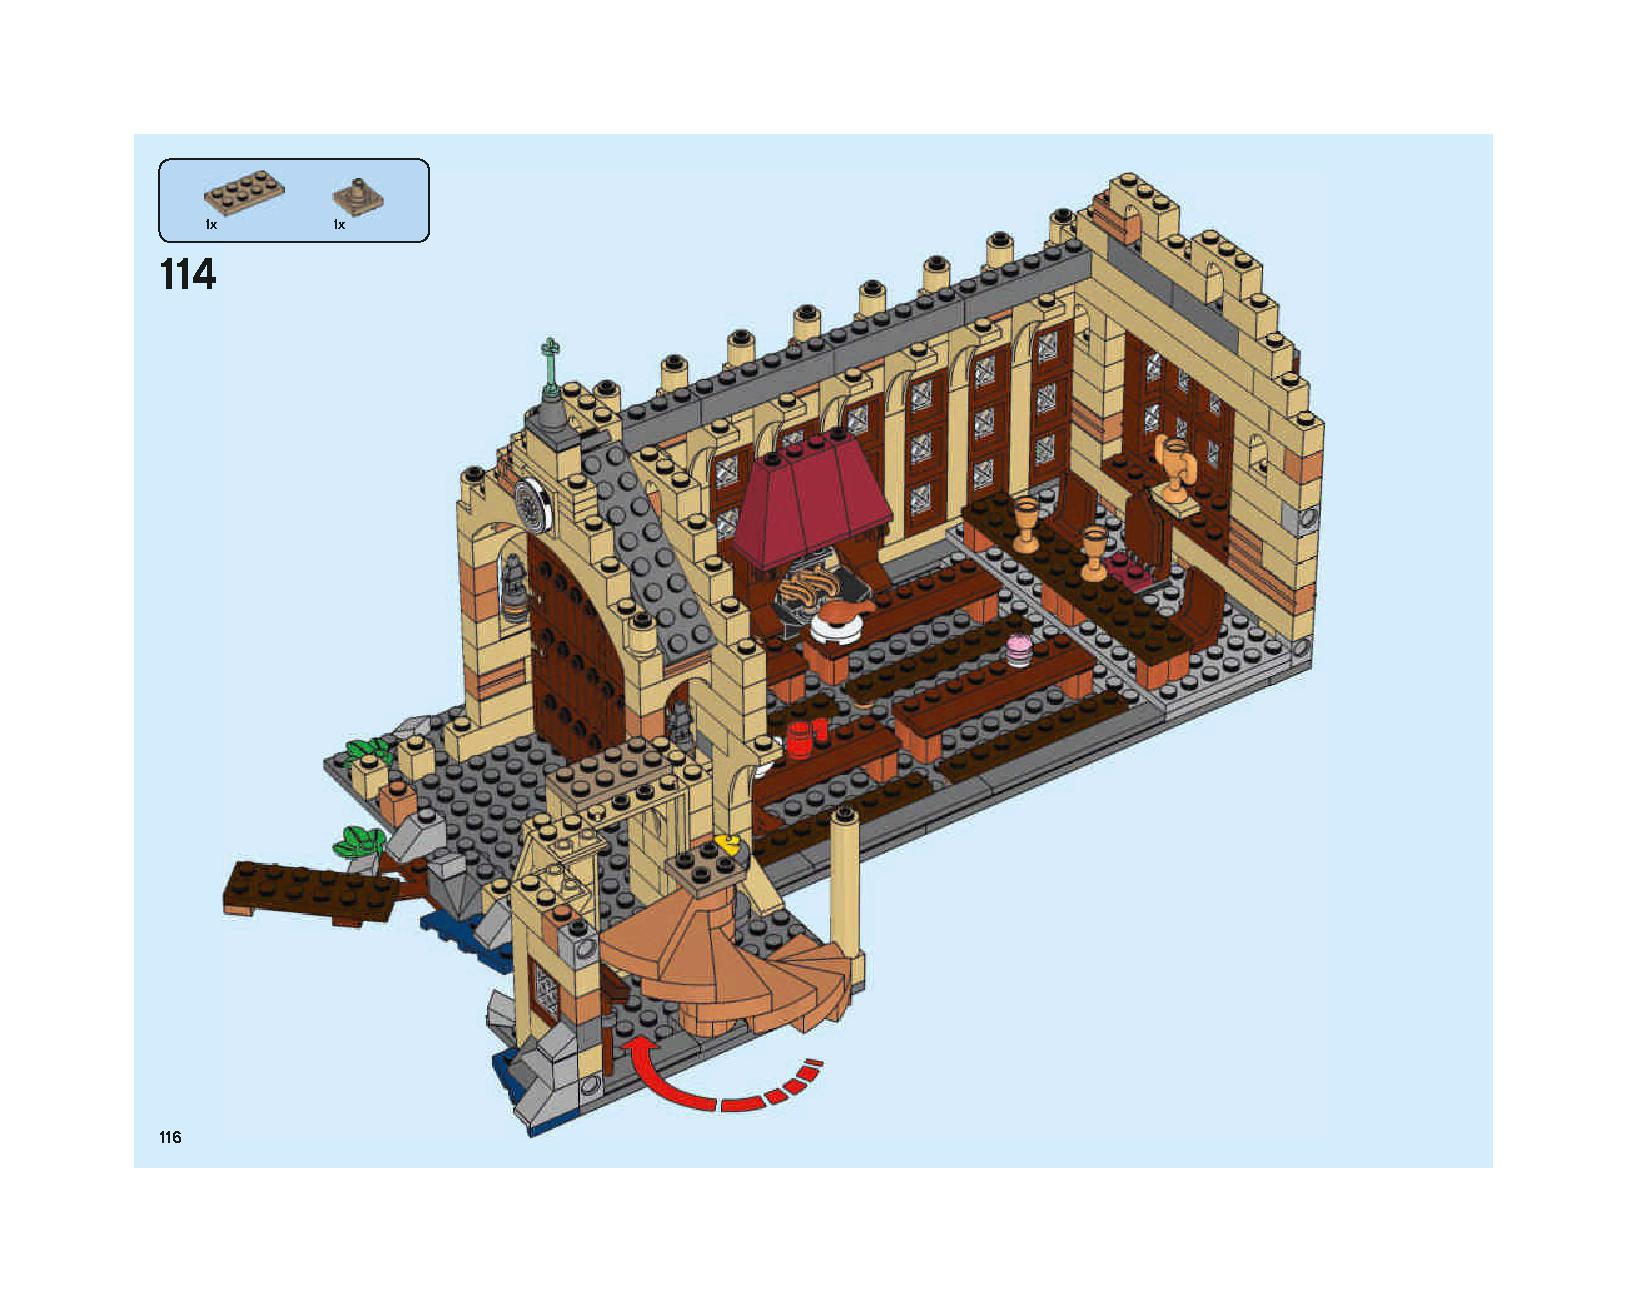 ホグワーツの大広間 75954 レゴの商品情報 レゴの説明書・組立方法 116 page